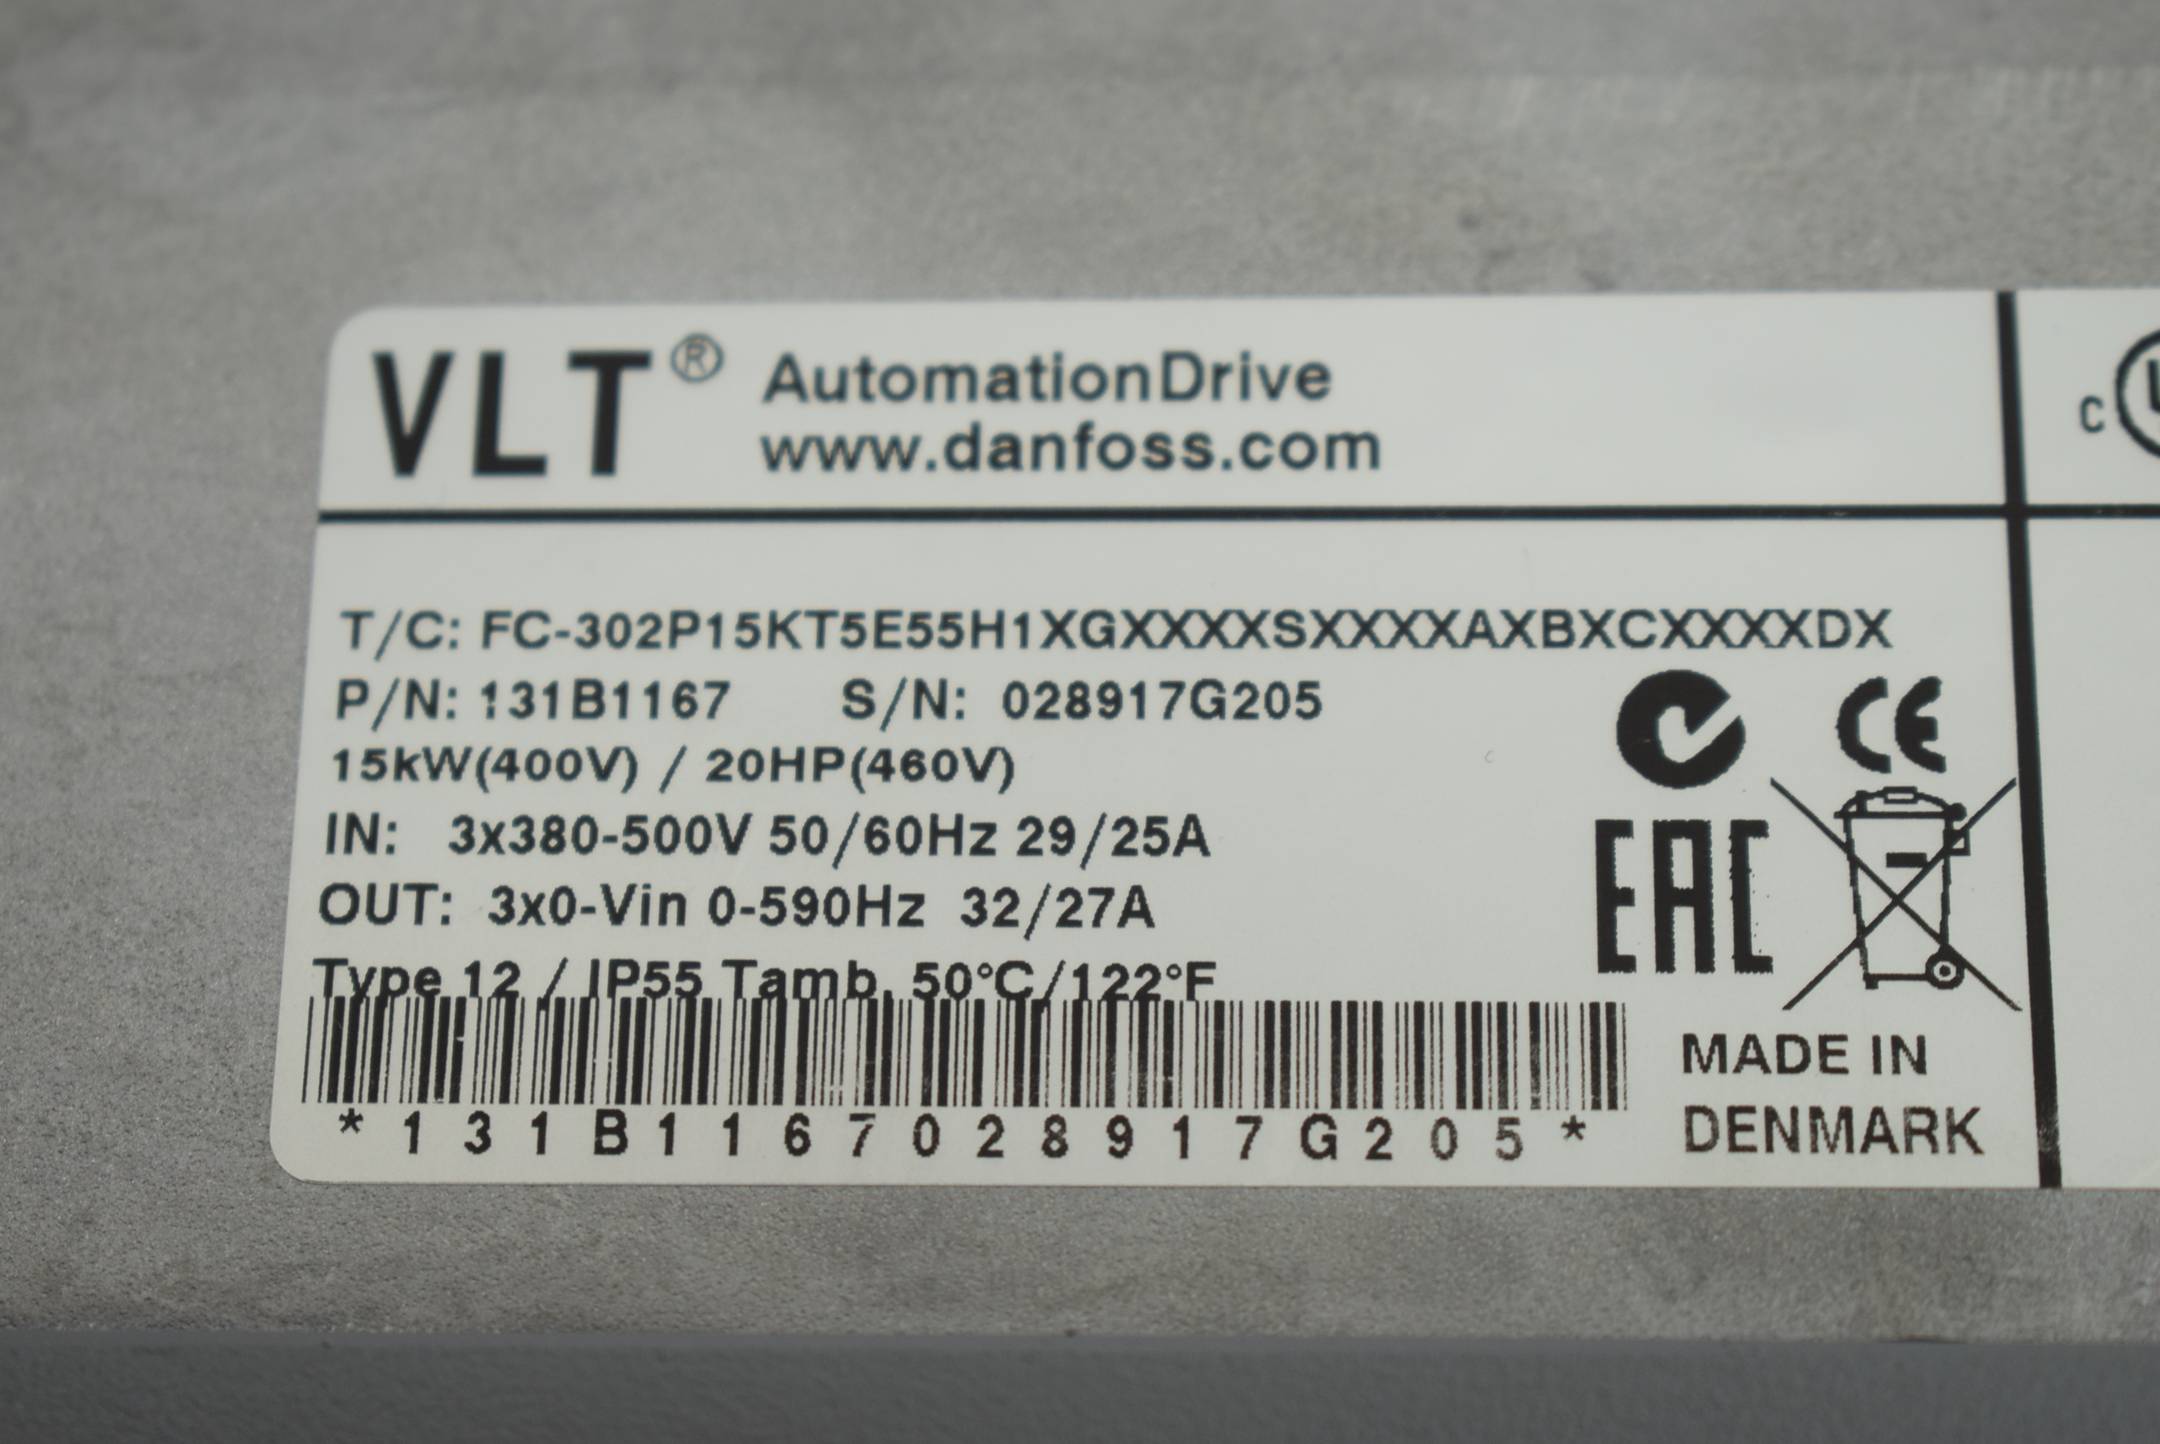 Danfoss VLT® AutomationsDrive FC-302P15KT5E55H1 ( 131B1167 )